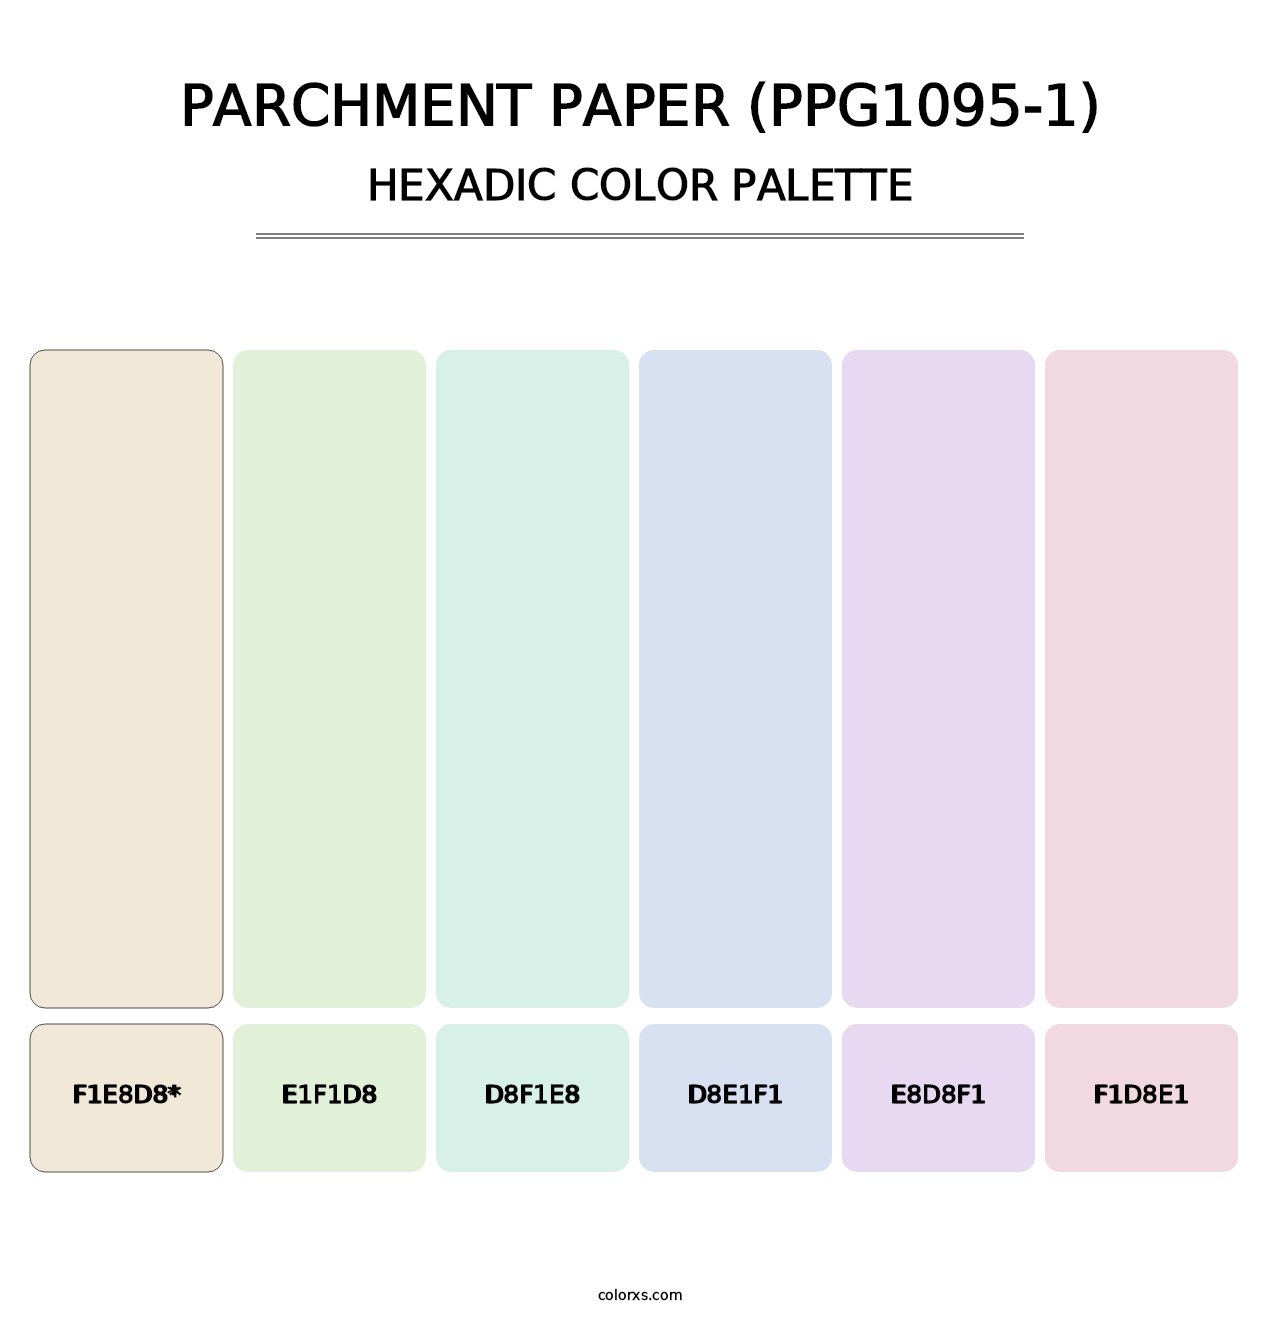 Parchment Paper (PPG1095-1) - Hexadic Color Palette